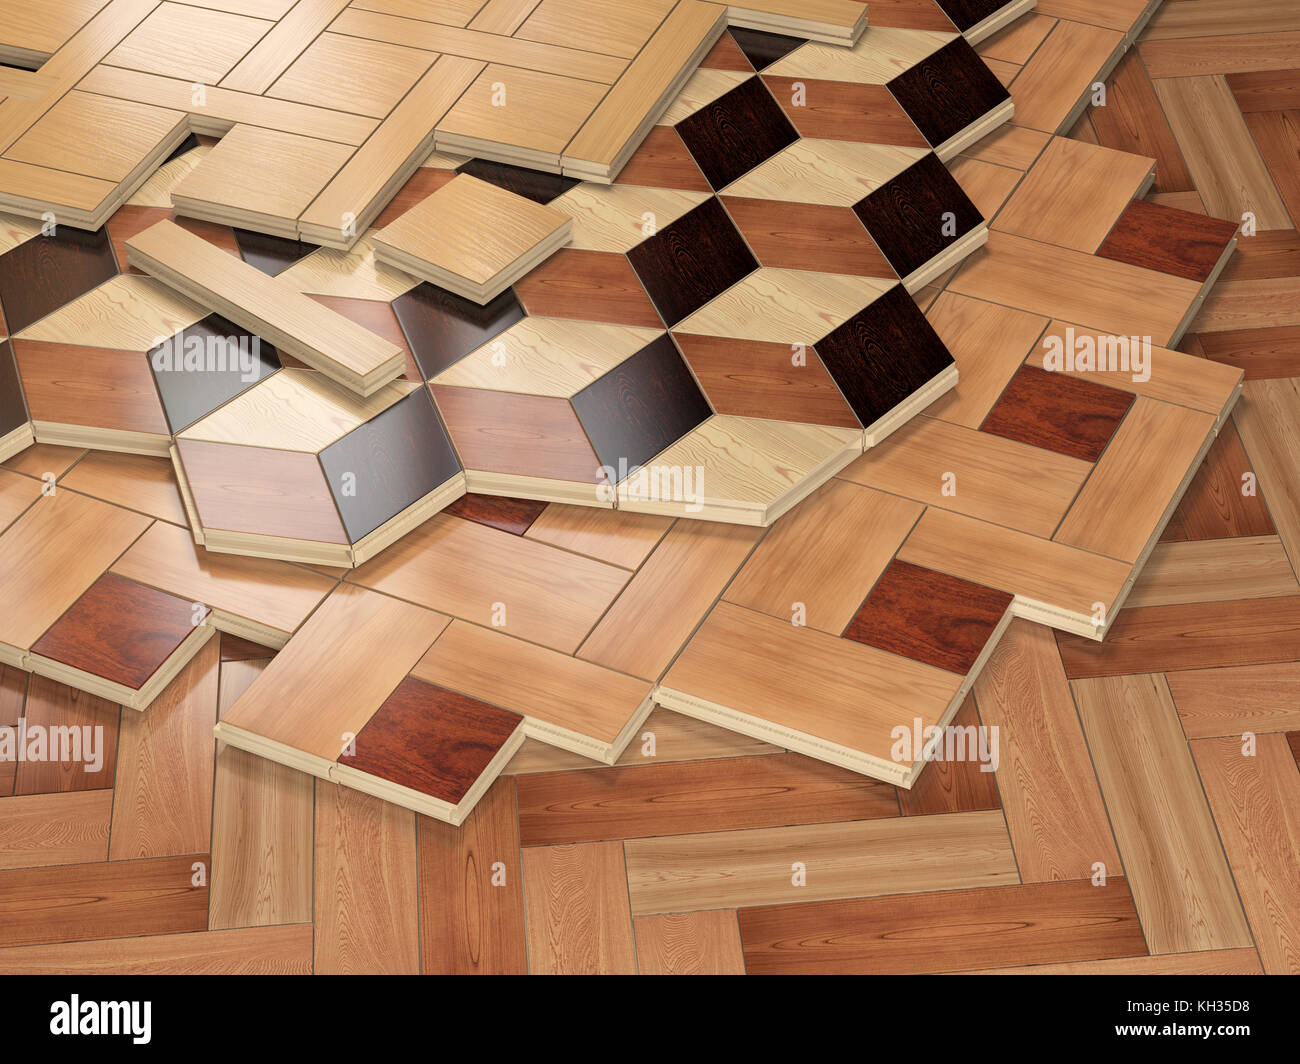 Ofr Parkettboden Holzbohlen stack. Wenige Arten von Parkett Beschichtung.  3D-Darstellung Stockfotografie - Alamy